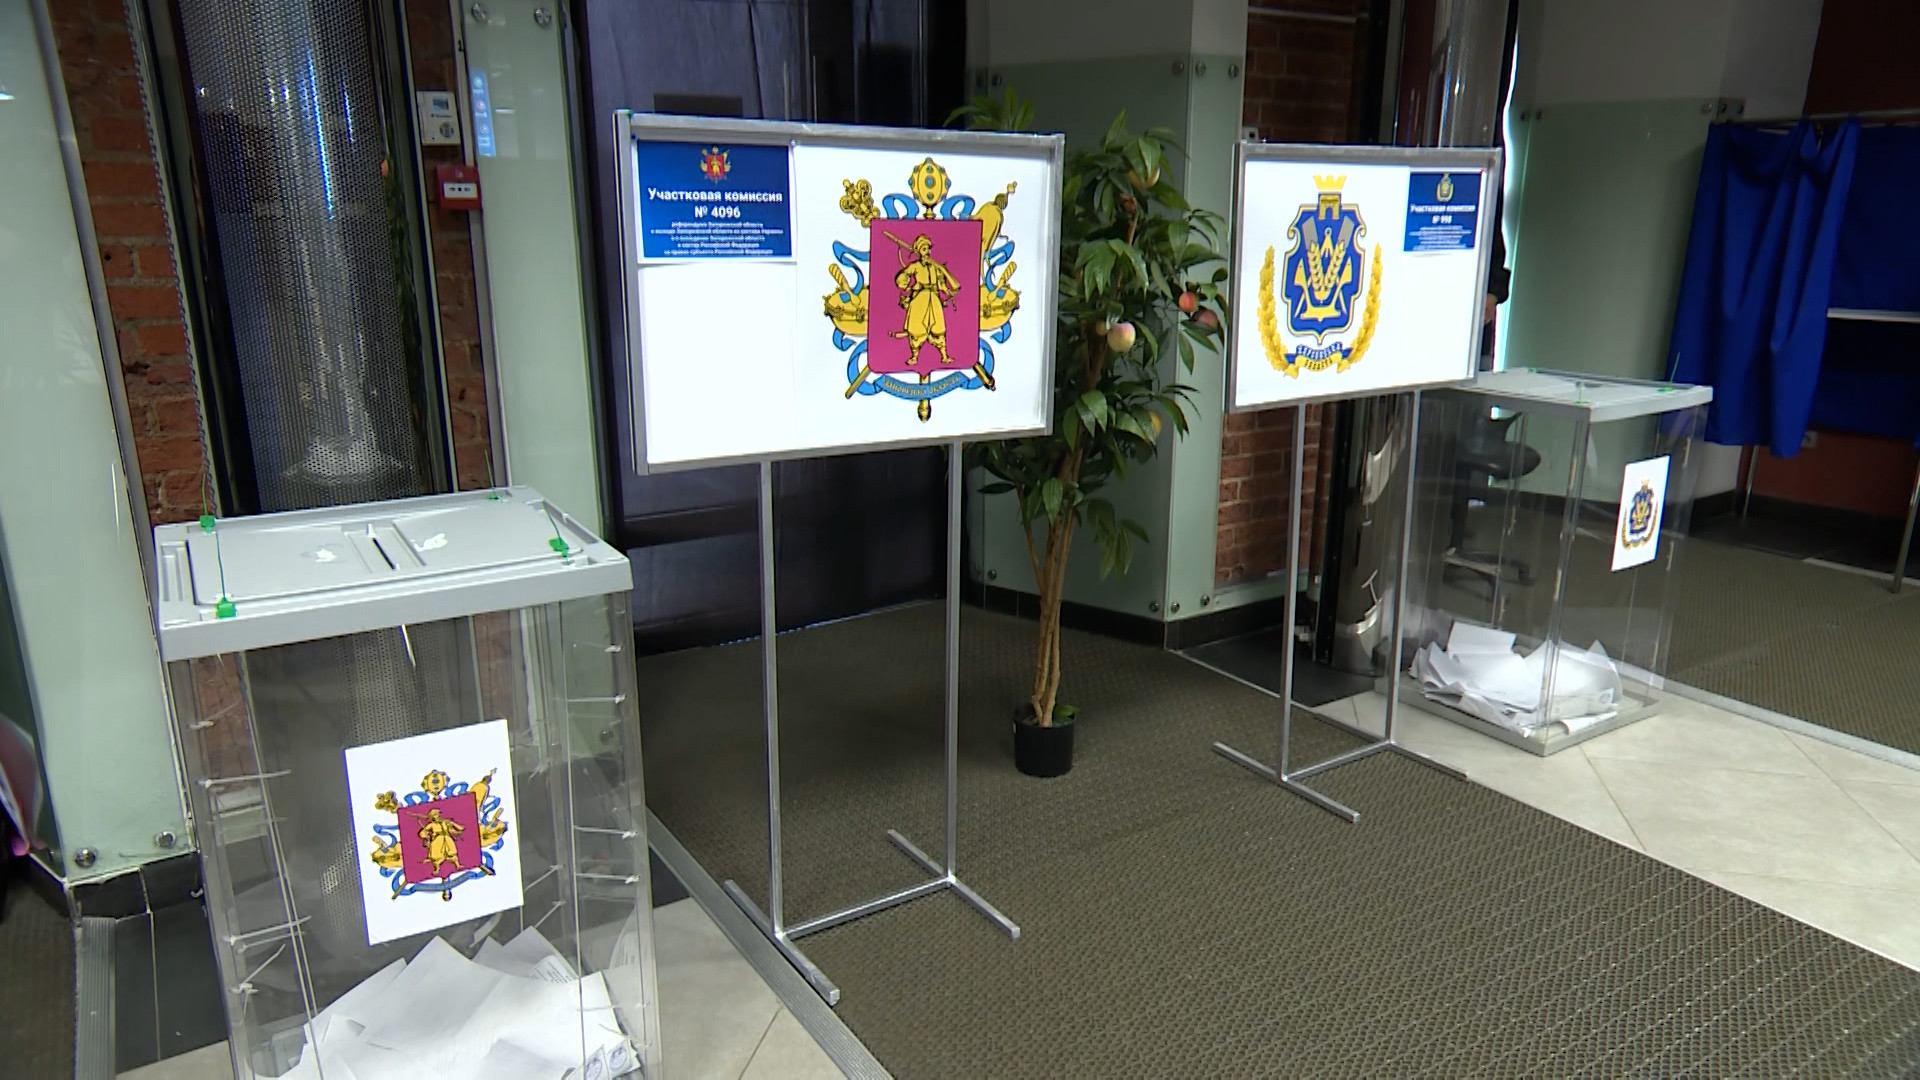 Референдумы наблюдатели. Пункт голосования по референдуму в Невском районе Санкт-Петербурга.